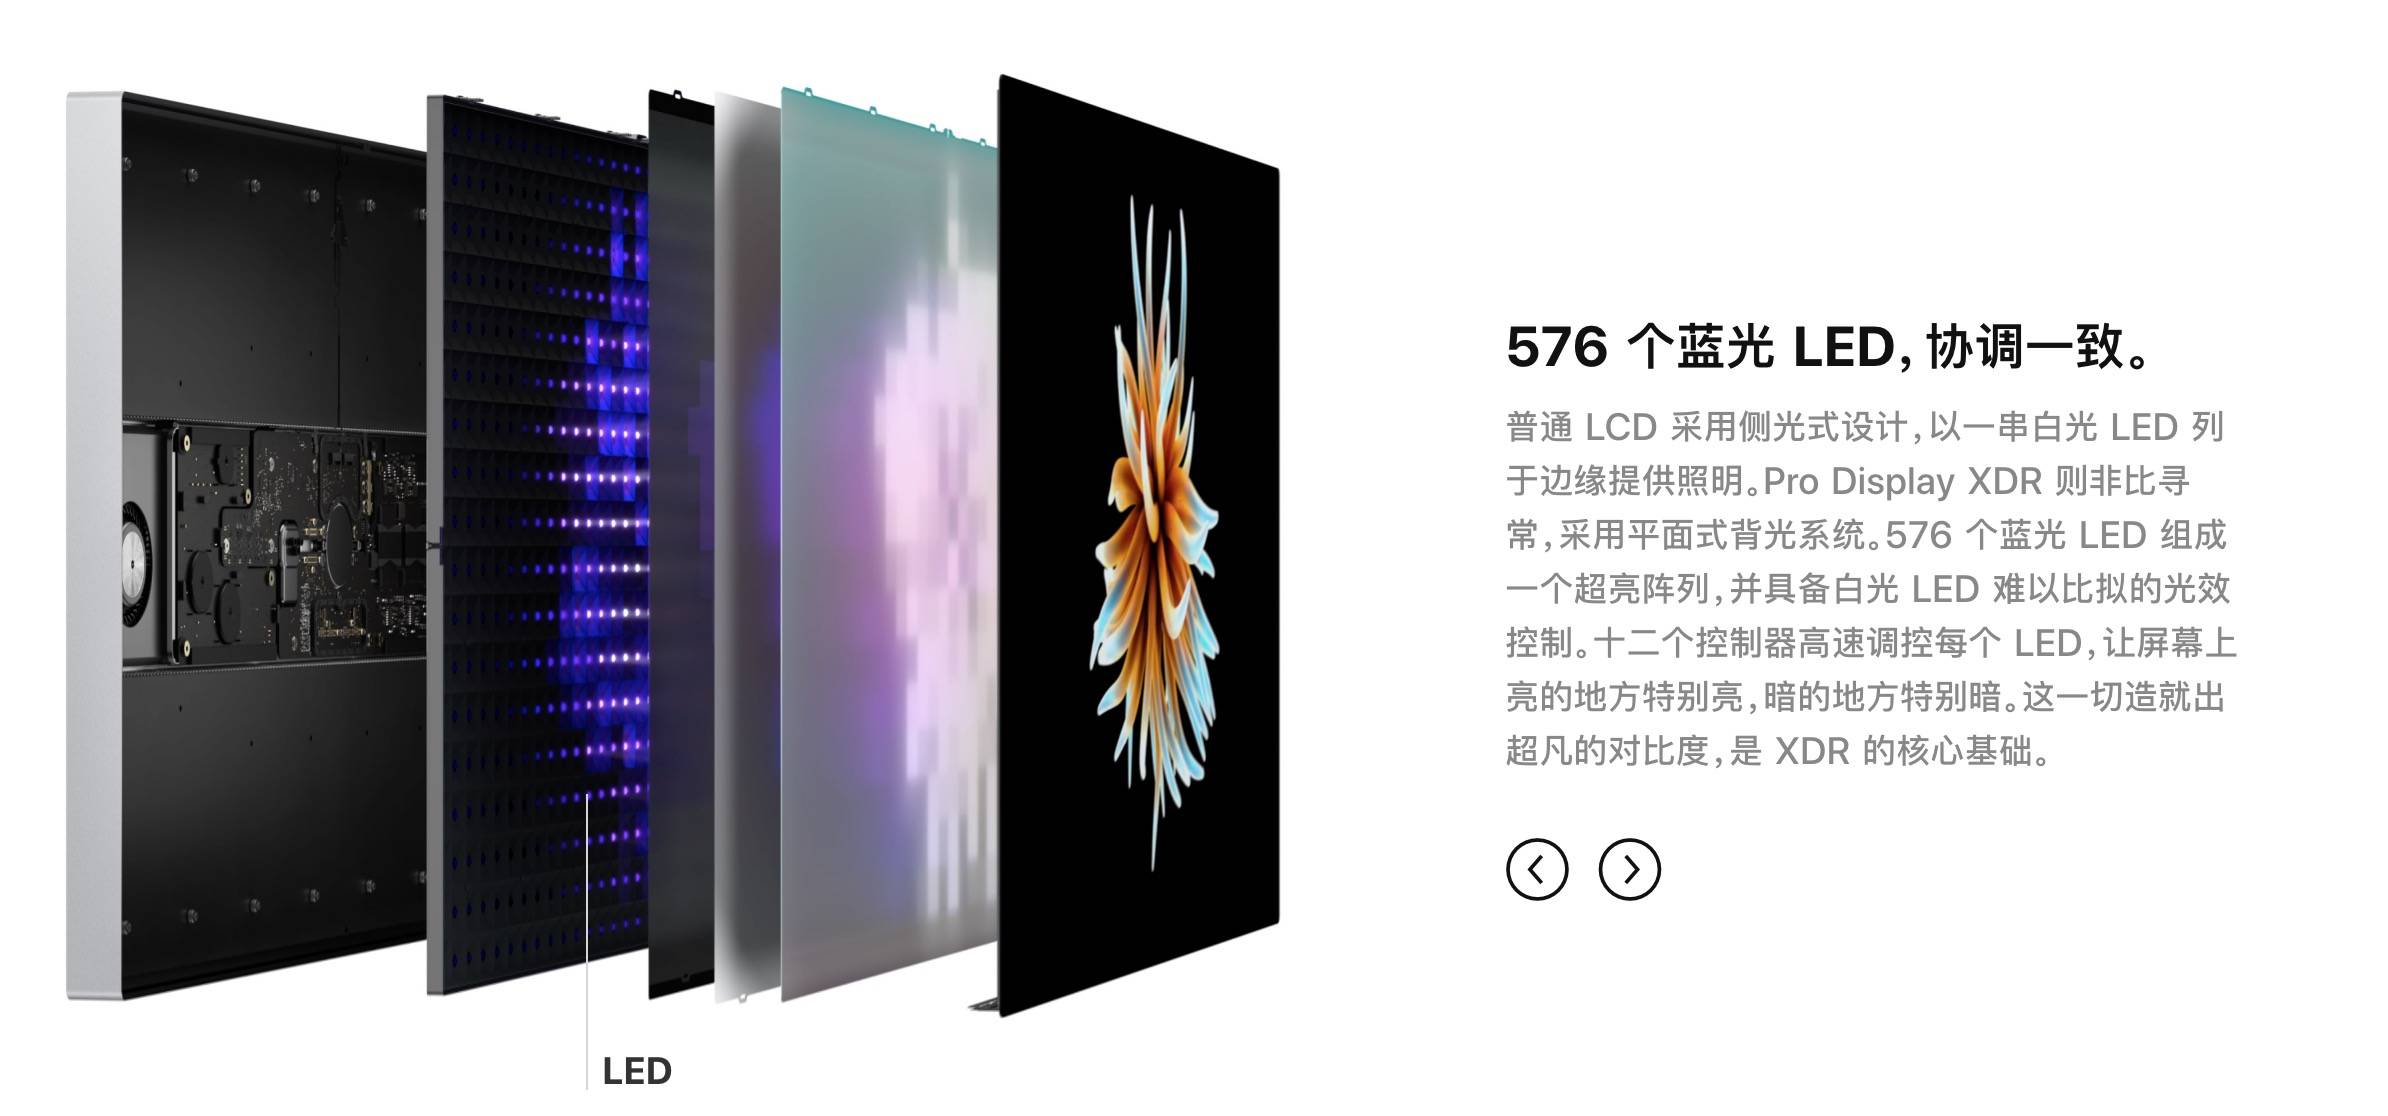 WechatIMG126 - Ho provato la prima TV 8K di Xiaomi sul posto. Come si è comportata la “Super Cup” da 82 pollici?